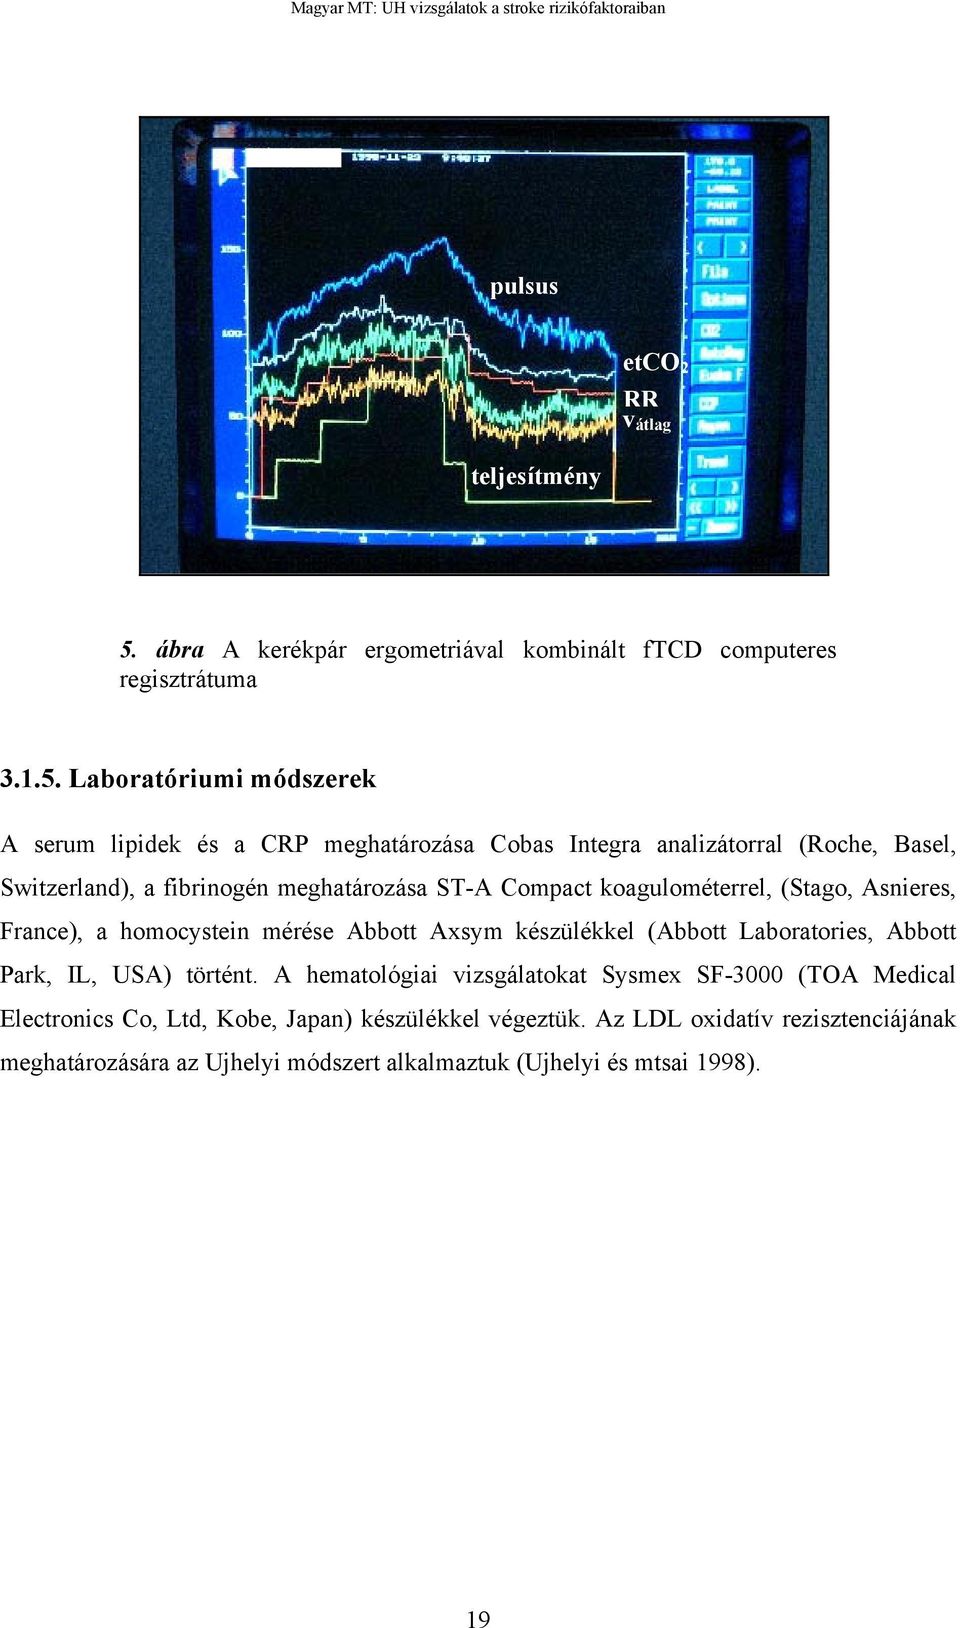 Laboratóriumi módszerek A serum lipidek és a CRP meghatározása Cobas Integra analizátorral (Roche, Basel, Switzerland), a fibrinogén meghatározása ST-A Compact